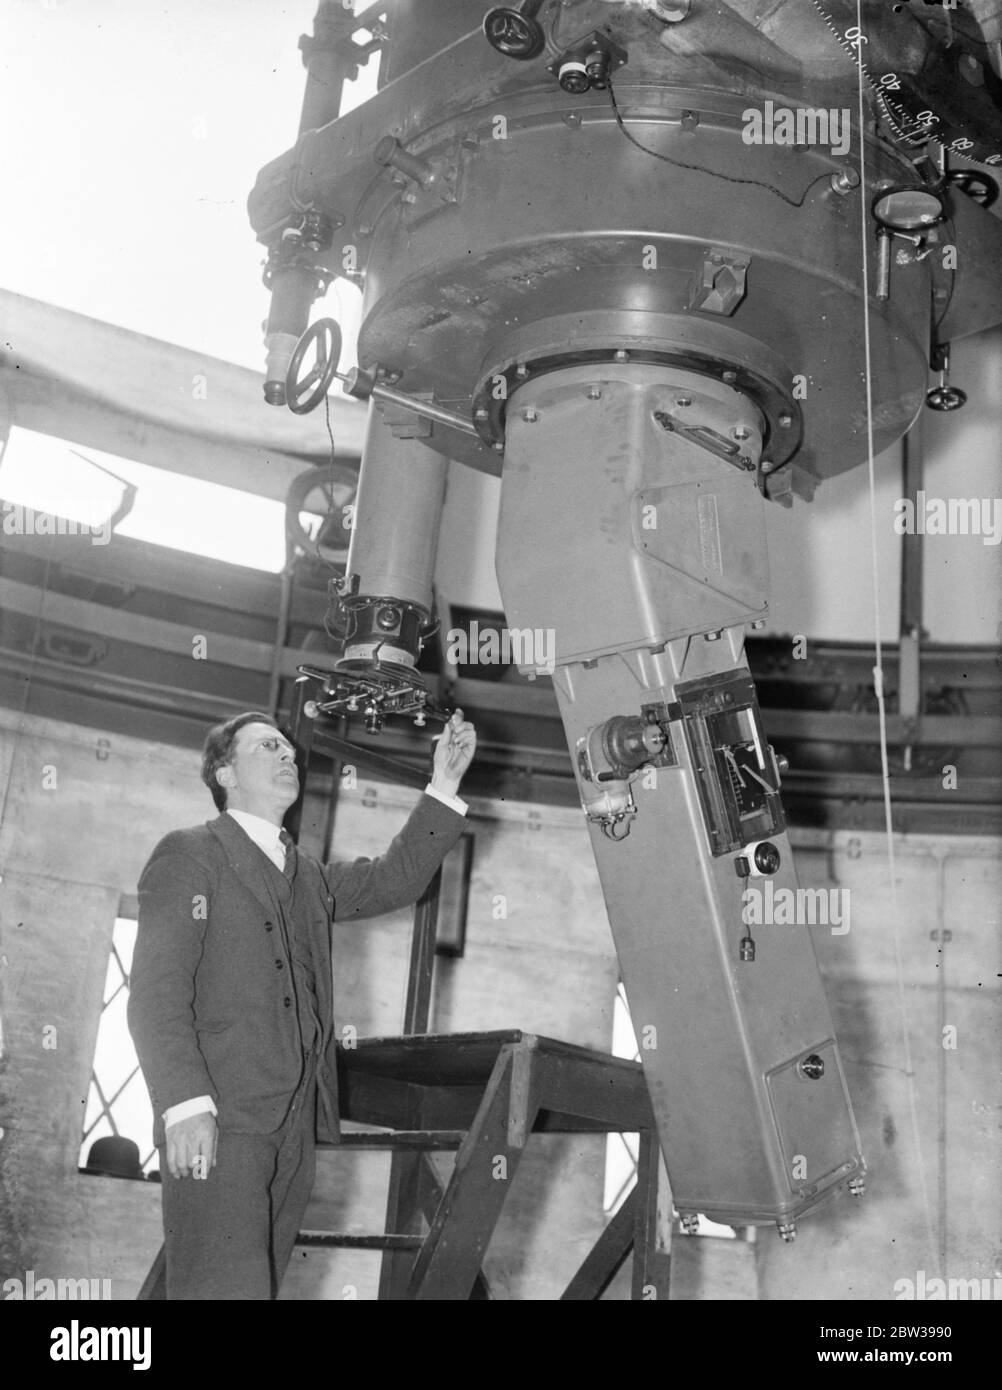 Ein riesiges neues Kamerateleskop zur Messung der Sternwärme mittels Fotografien wurde am Greenwich Observatory in Greenwich Park, London, installiert. Das Licht der Sterne fällt auf den Spiegel und geht dann mehrmals vom Reflektor zum Reflektor und durch ein Prisma, bis es schließlich die fotografische Platte erreicht. Der Spiegel des Teleskops ist 36 Zoll im Durchmesser und 6 Zoll dick und wiegt 500 lbs. Es dauerte zwei Jahre zu machen. Die Kuppel ist 34 Fuß im Durchmesser und der Beobachter kann alle komplizierten Instrumente mit dem Knopfdruck zu steuern. Foto zeigt ; die n Stockfoto